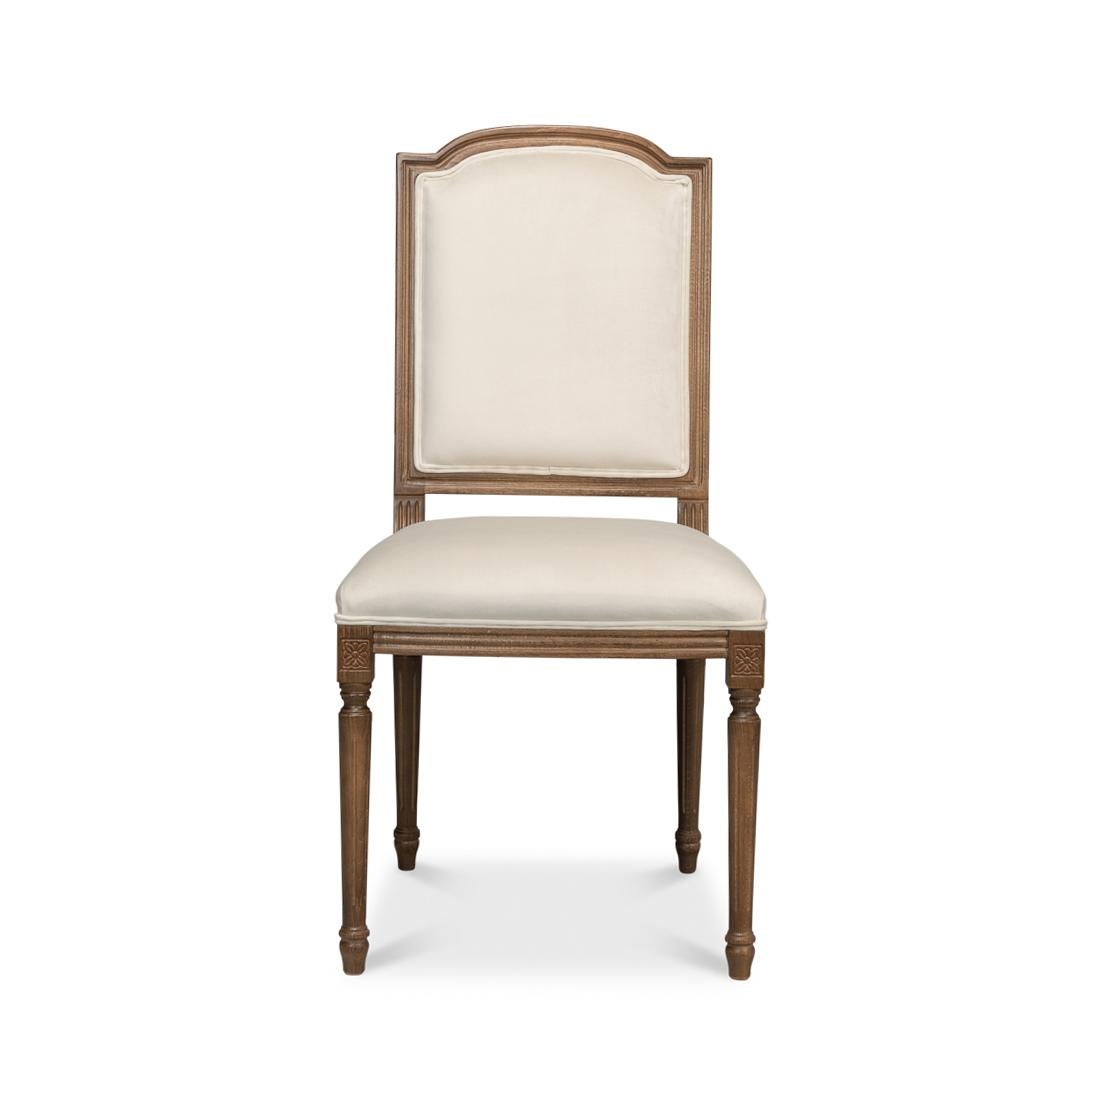 Cette chaise fine est un véritable clin d'œil au design provincial français classique, fabriqué avec une attention détaillée pour apporter un air d'élégance à votre salle à manger. Le gracieux cadre en bois présente une finition riche et